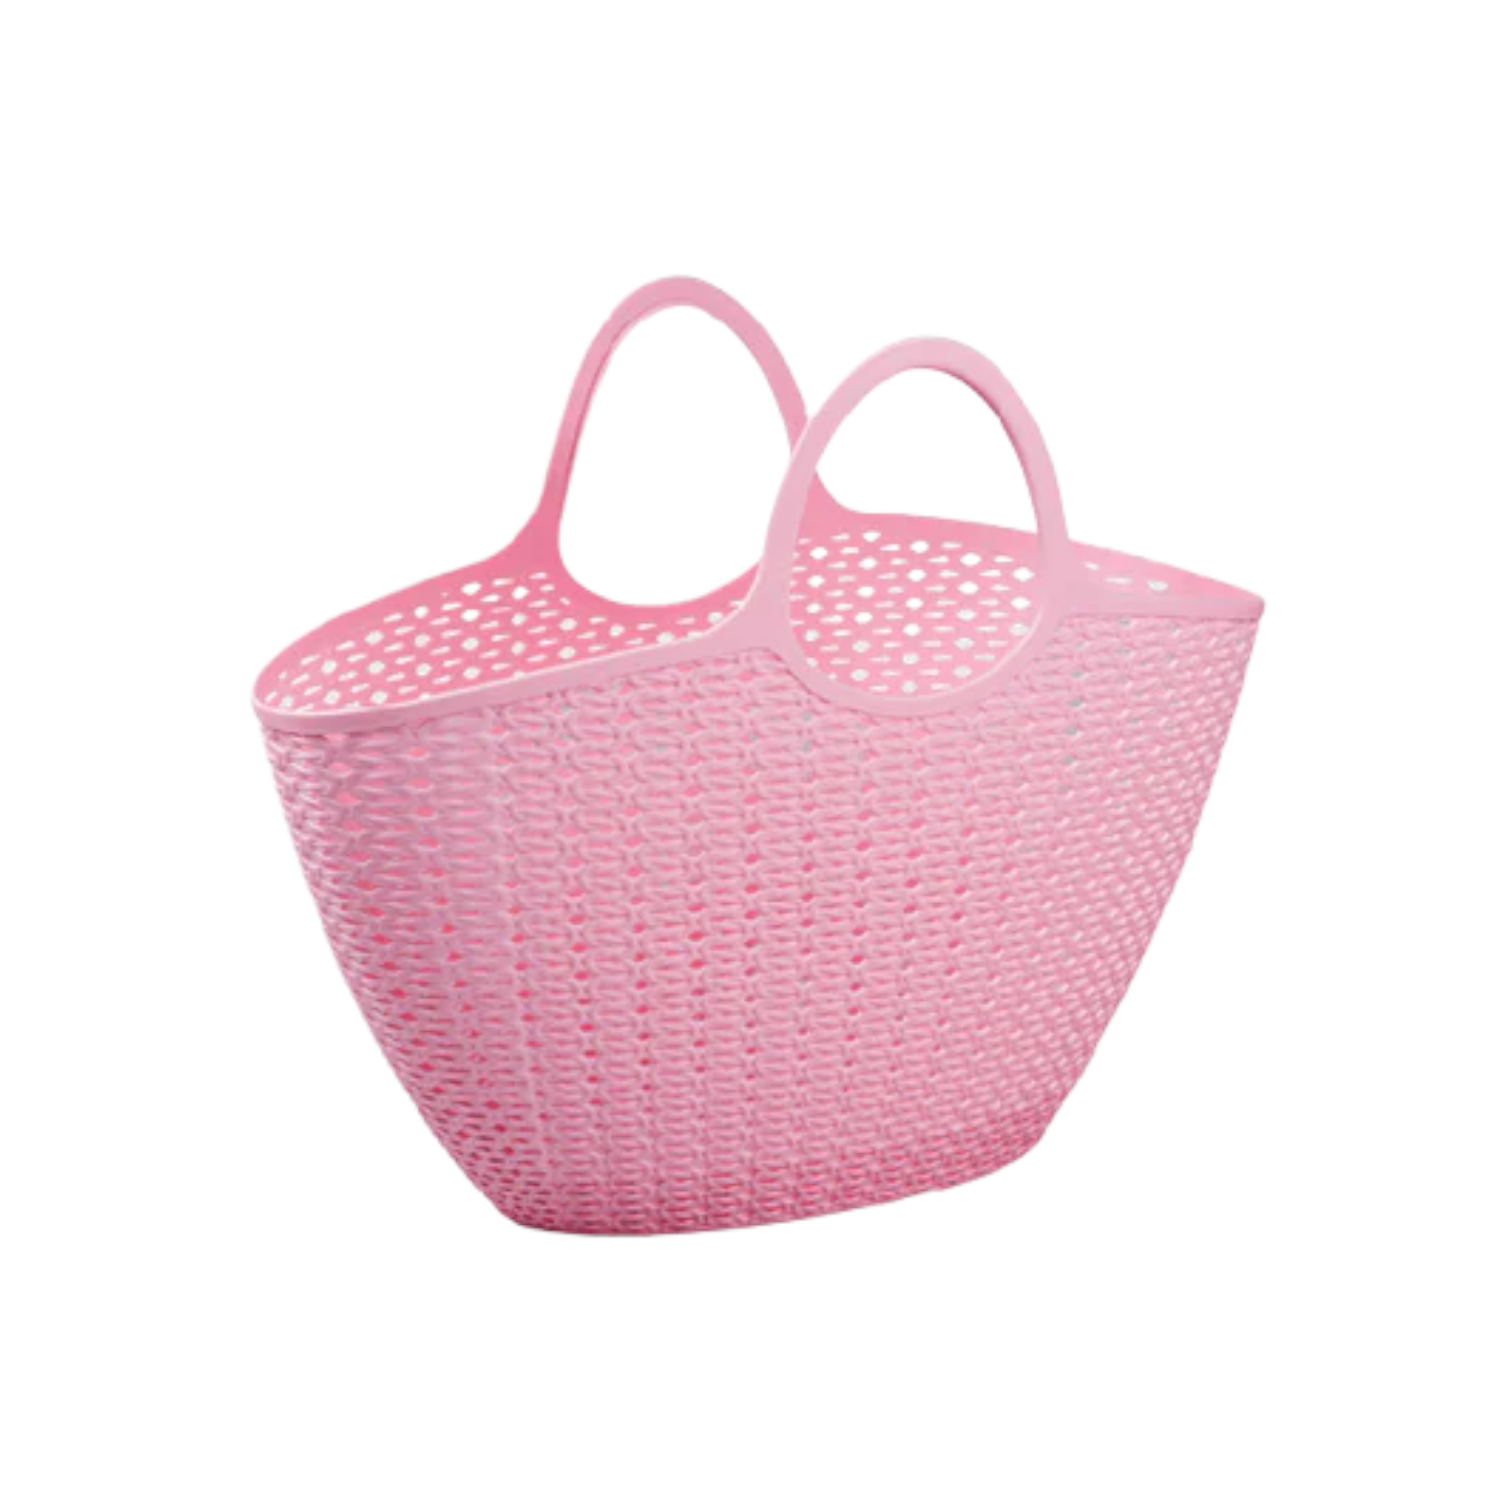 Knit design small bag - Lunaz Shop